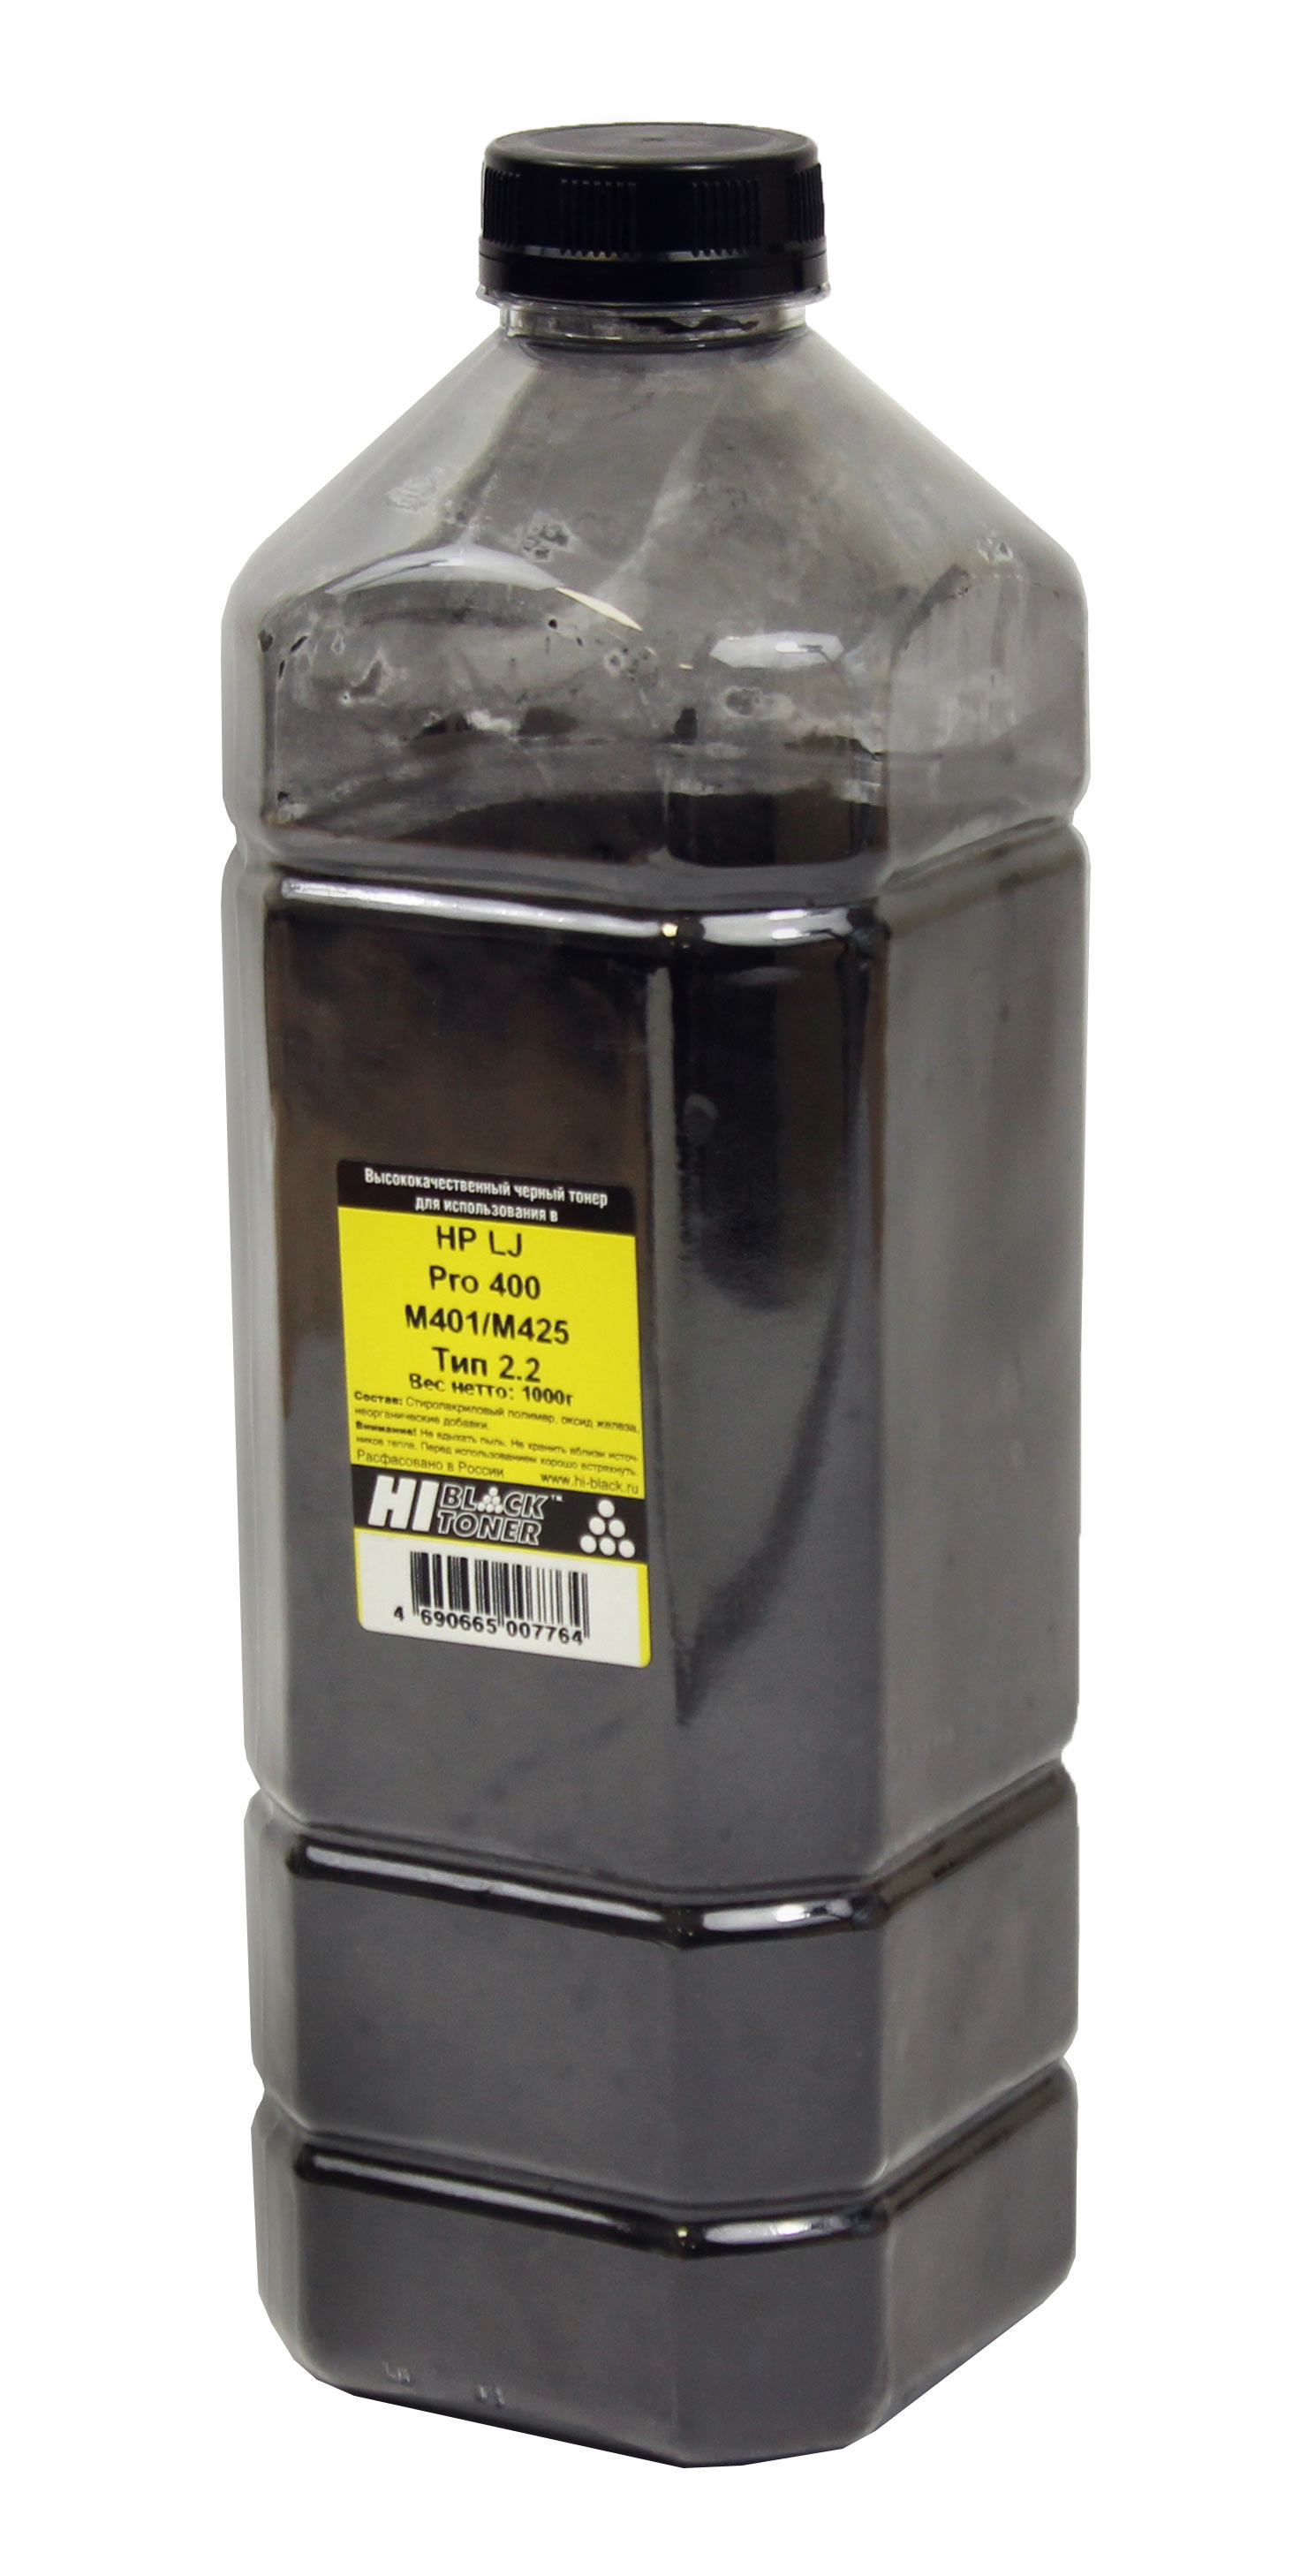 Тонер Hi-Black для HP LJ Pro 400 M401/M425, Тип 2.2, Bk, 1 кг, канистра - купить с доставкой по России